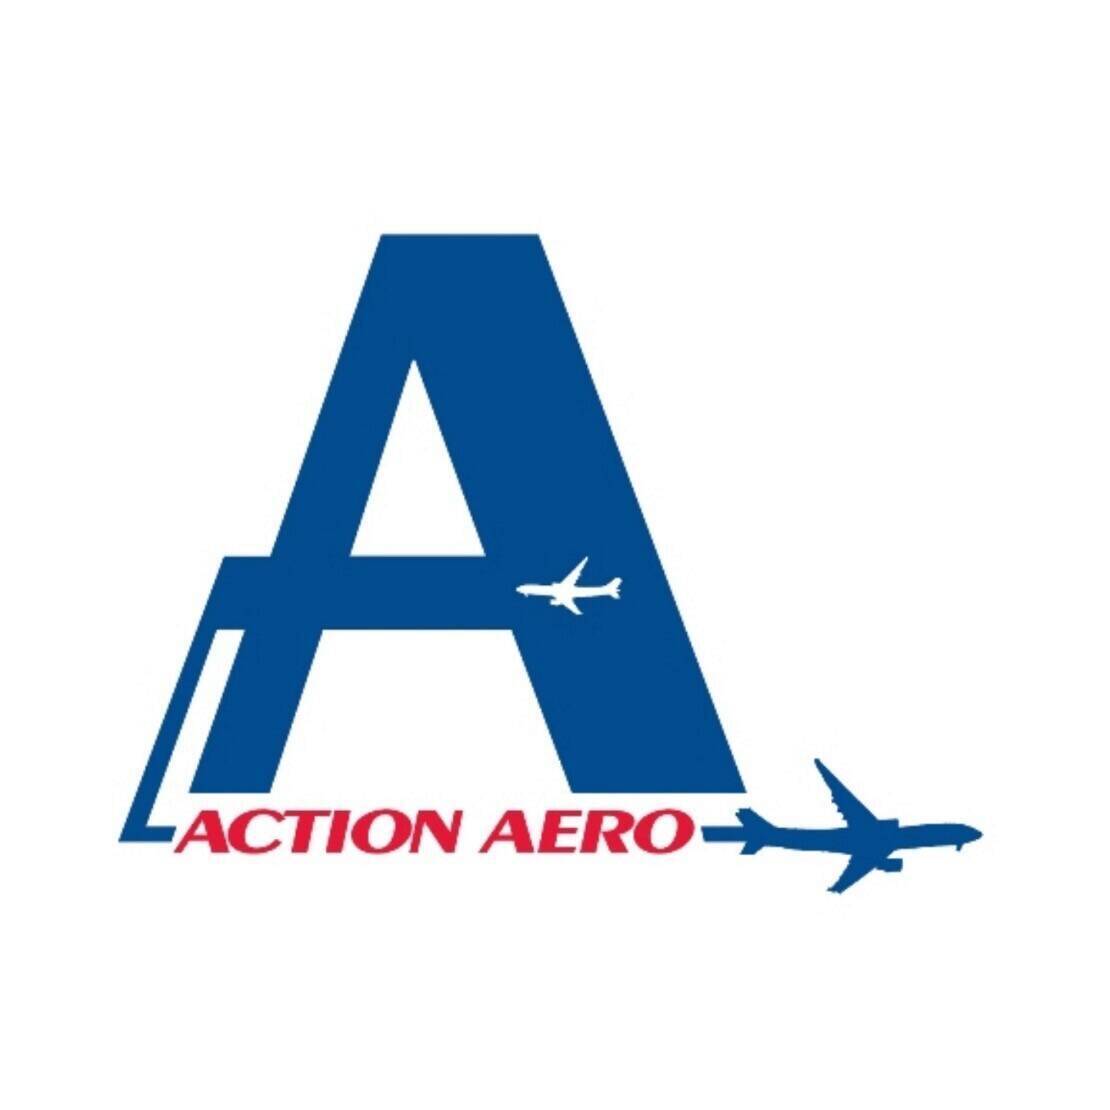 Action Aero / Atlantic Canada Aerospace & Defence Association (ACADA)